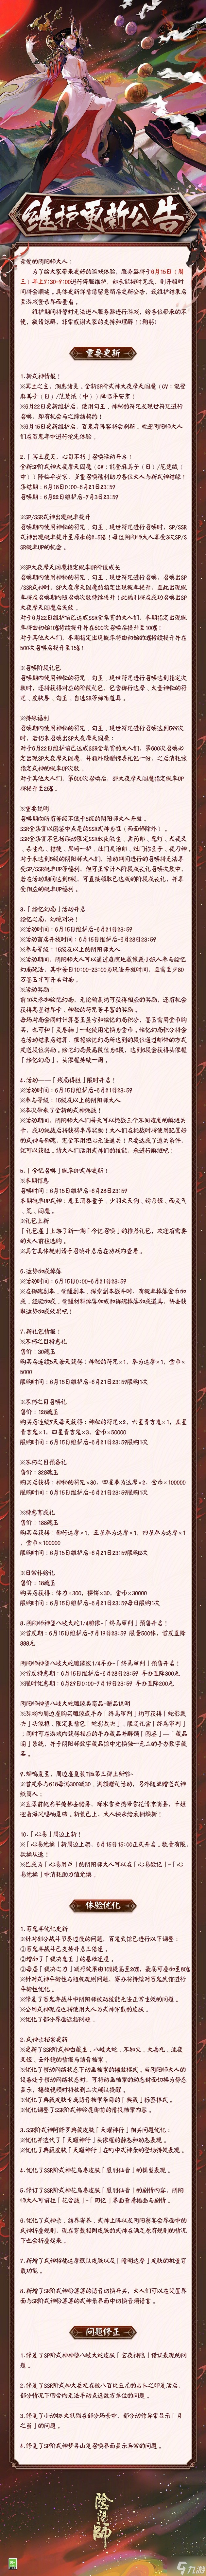 阴阳师正式服6月15日更新了什么 阴阳师正式服6月15日更新内容